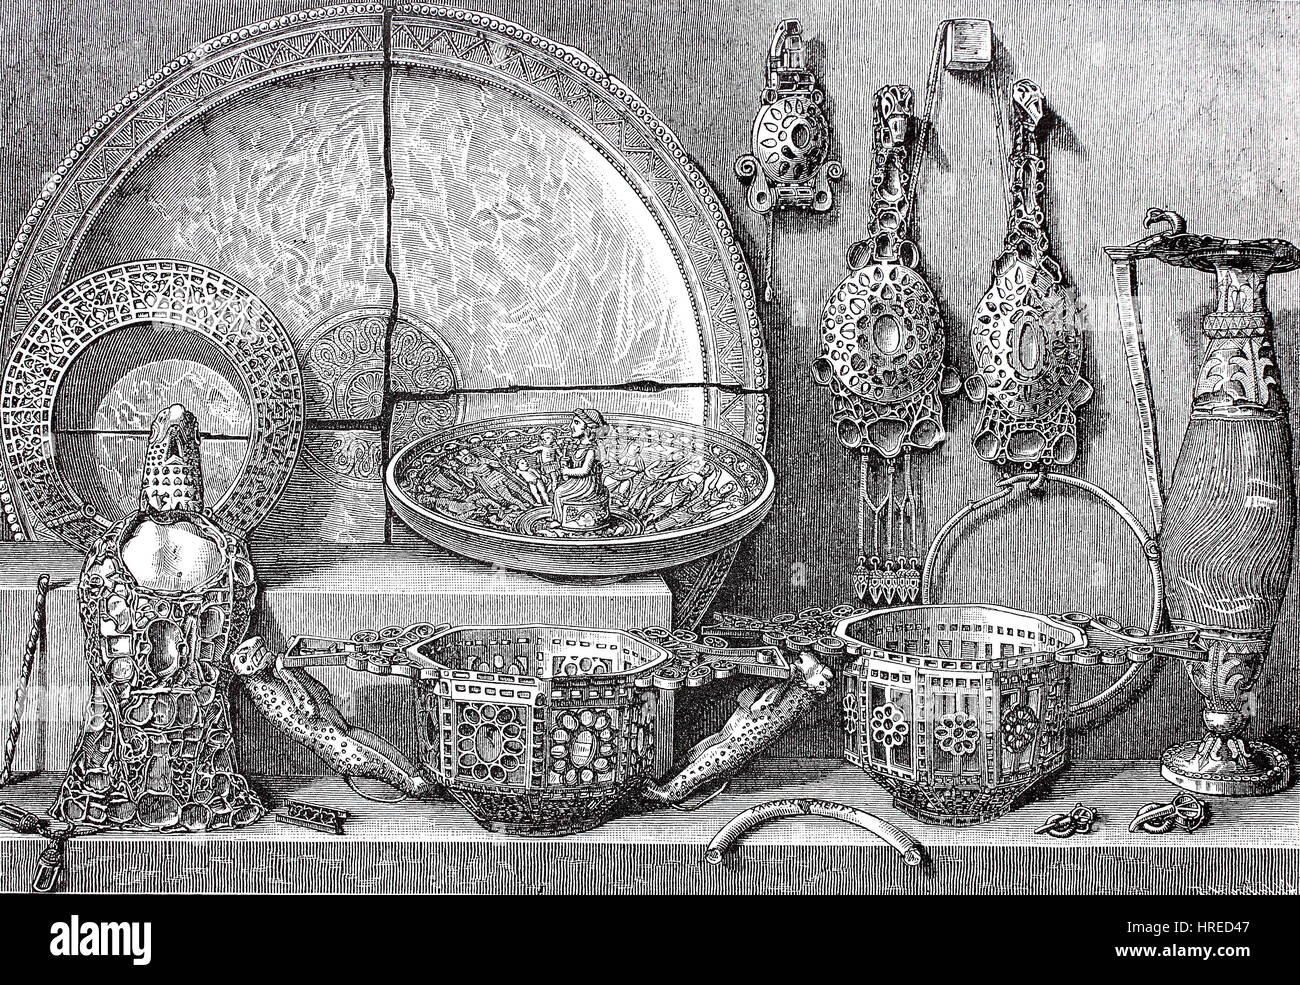 Le Trésor Pietroasele, ou le Trésor Petrossa, trouvés dans la région de Pietroasele, Buzau, Roumanie, soi-disant trésor de Athanarich, reproduction d'une gravure sur bois du xixe siècle, 1885 Banque D'Images